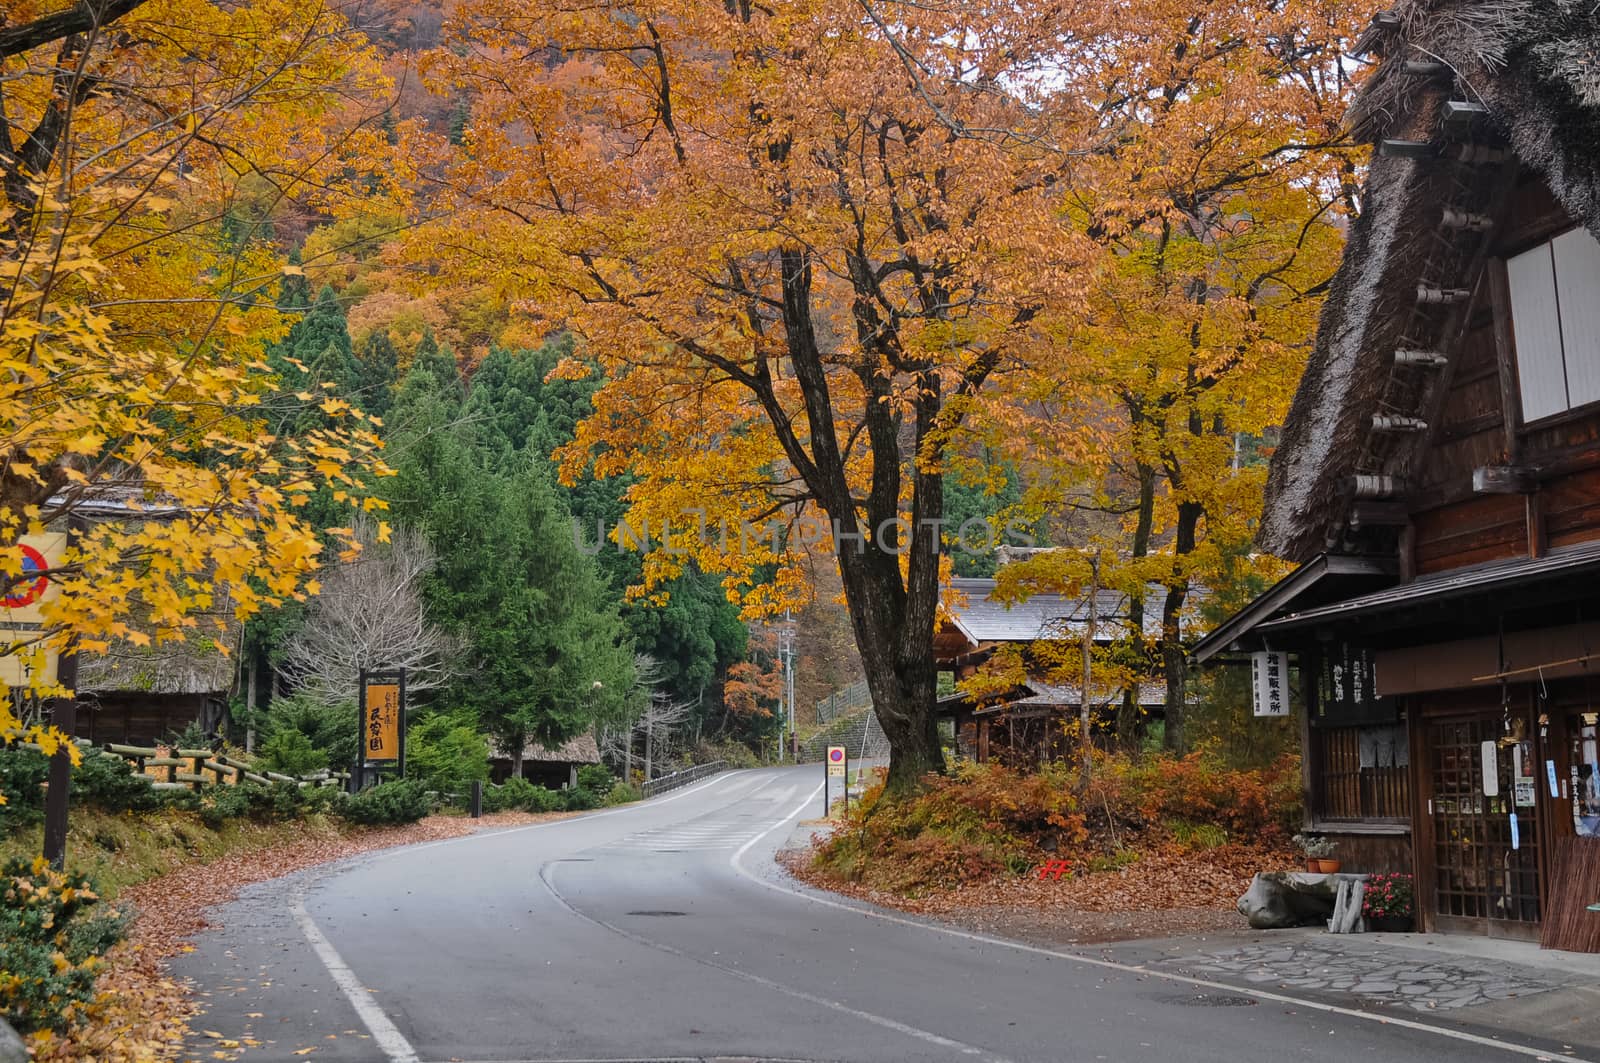 Shirakawago heritage cottage in magical Autumn Takayama Japan